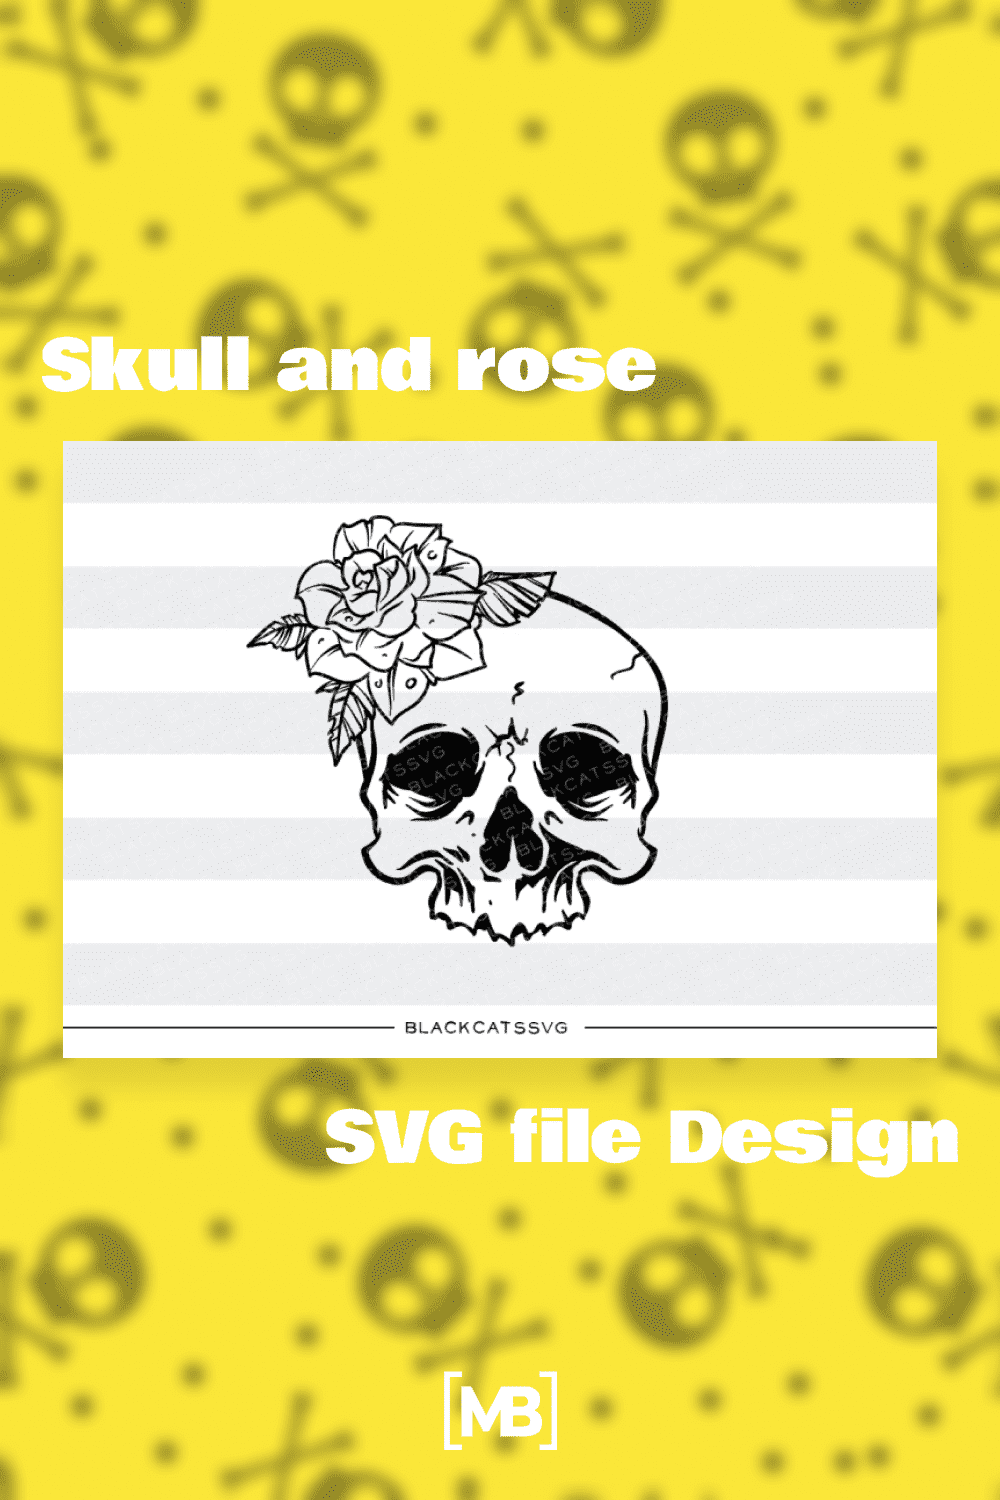 Skull and rose SVG file Design.